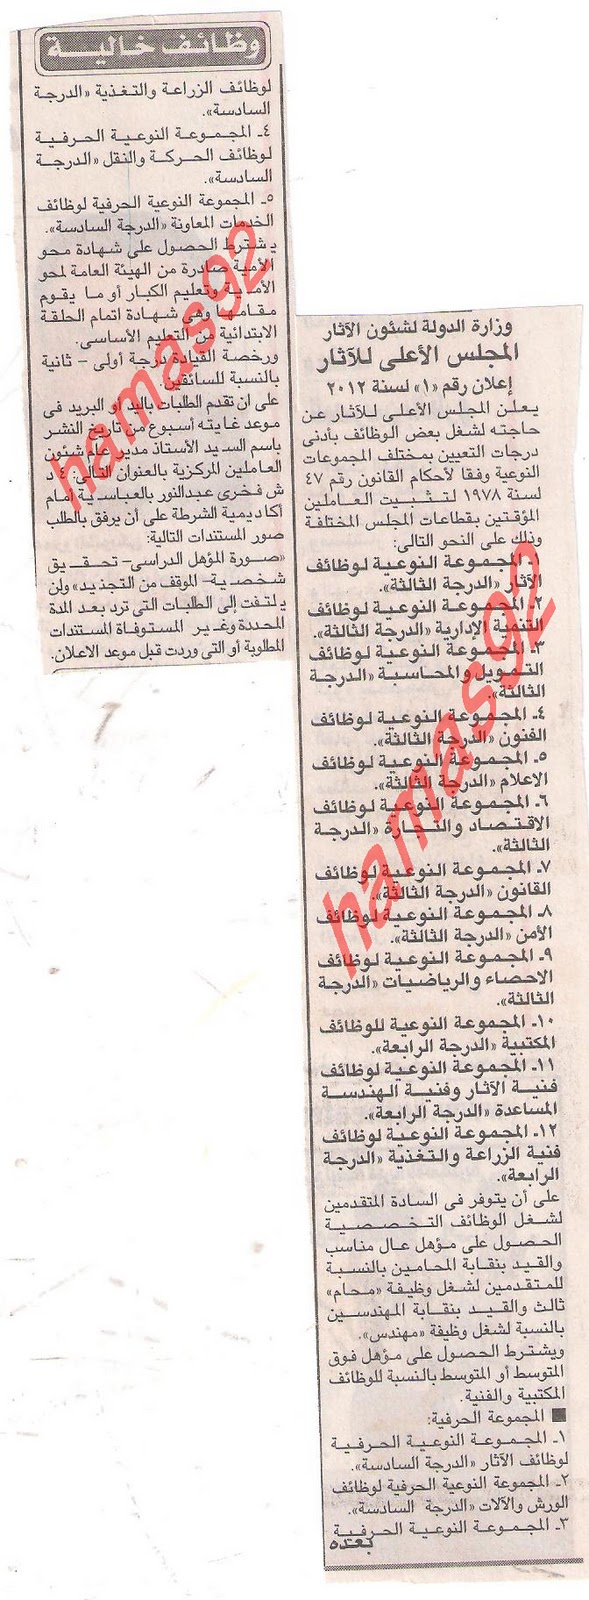 اعلانات وظائف جريدة الاخبار الاربعاء 4 يناير 2012  Picture+001